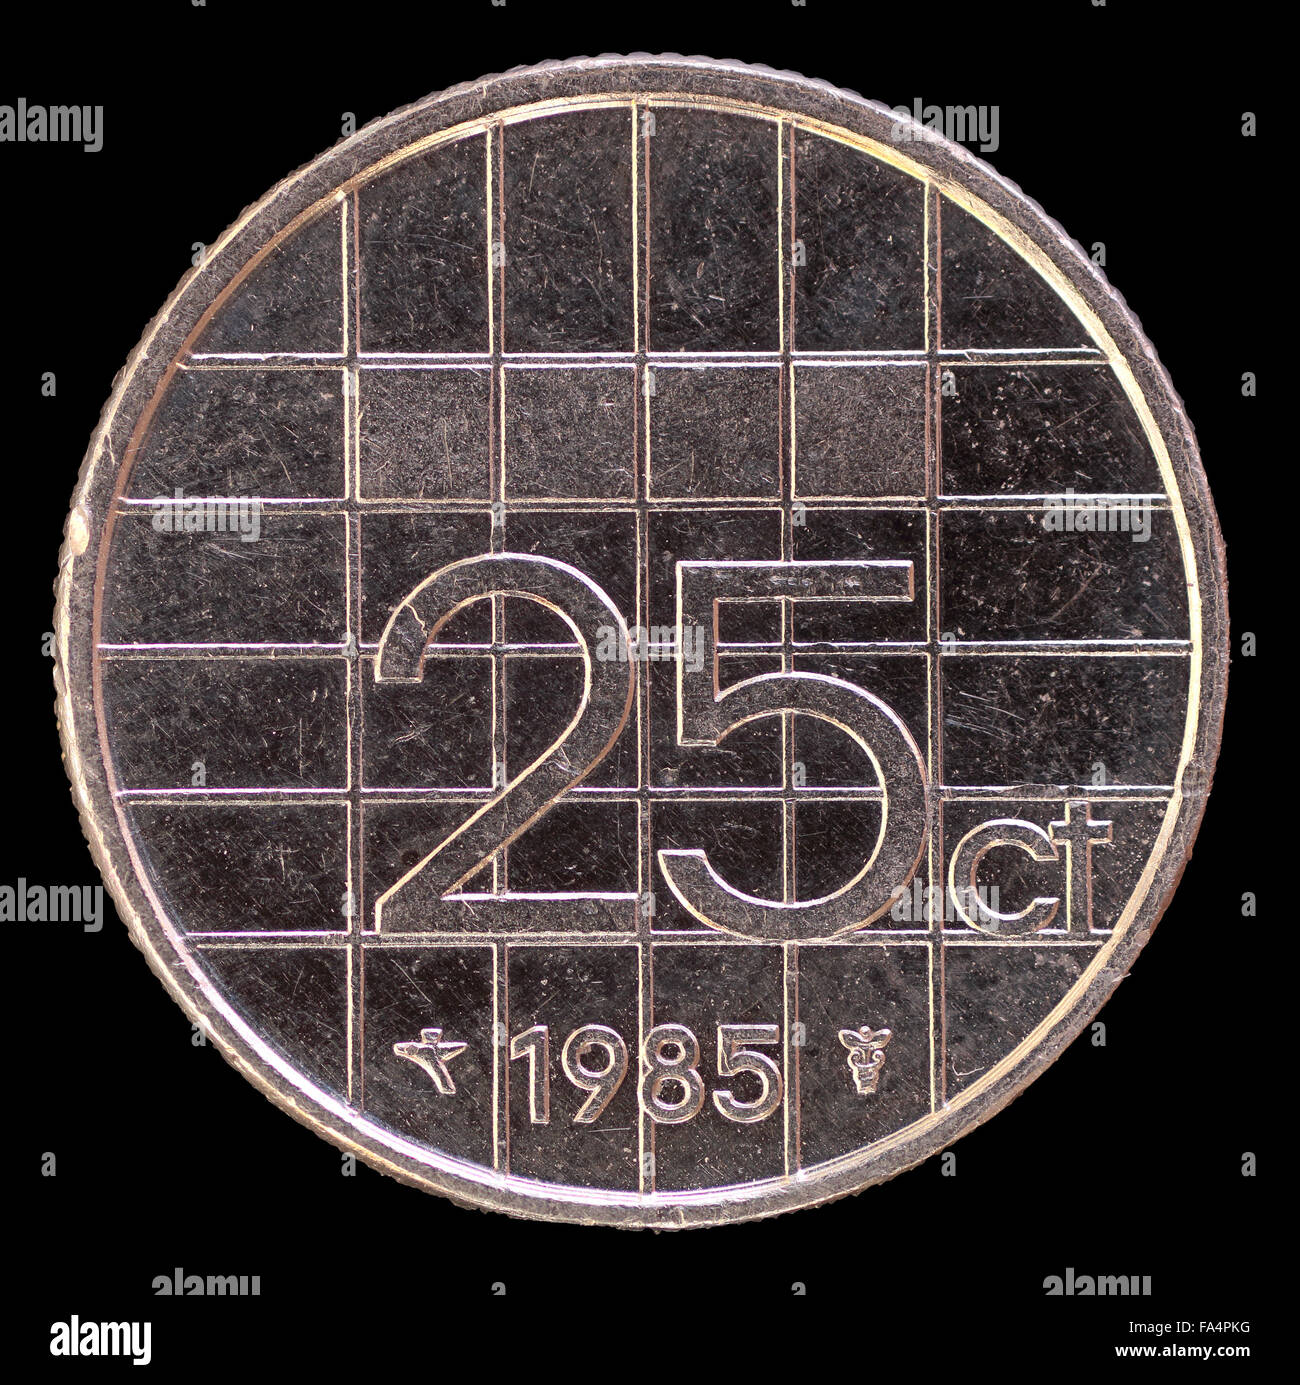 La faccia di coda di 25 CENTESIMI DI FIORINO, di monete emesse dai Paesi Bassi nel 1985. Immagine isolata su sfondo nero Foto Stock